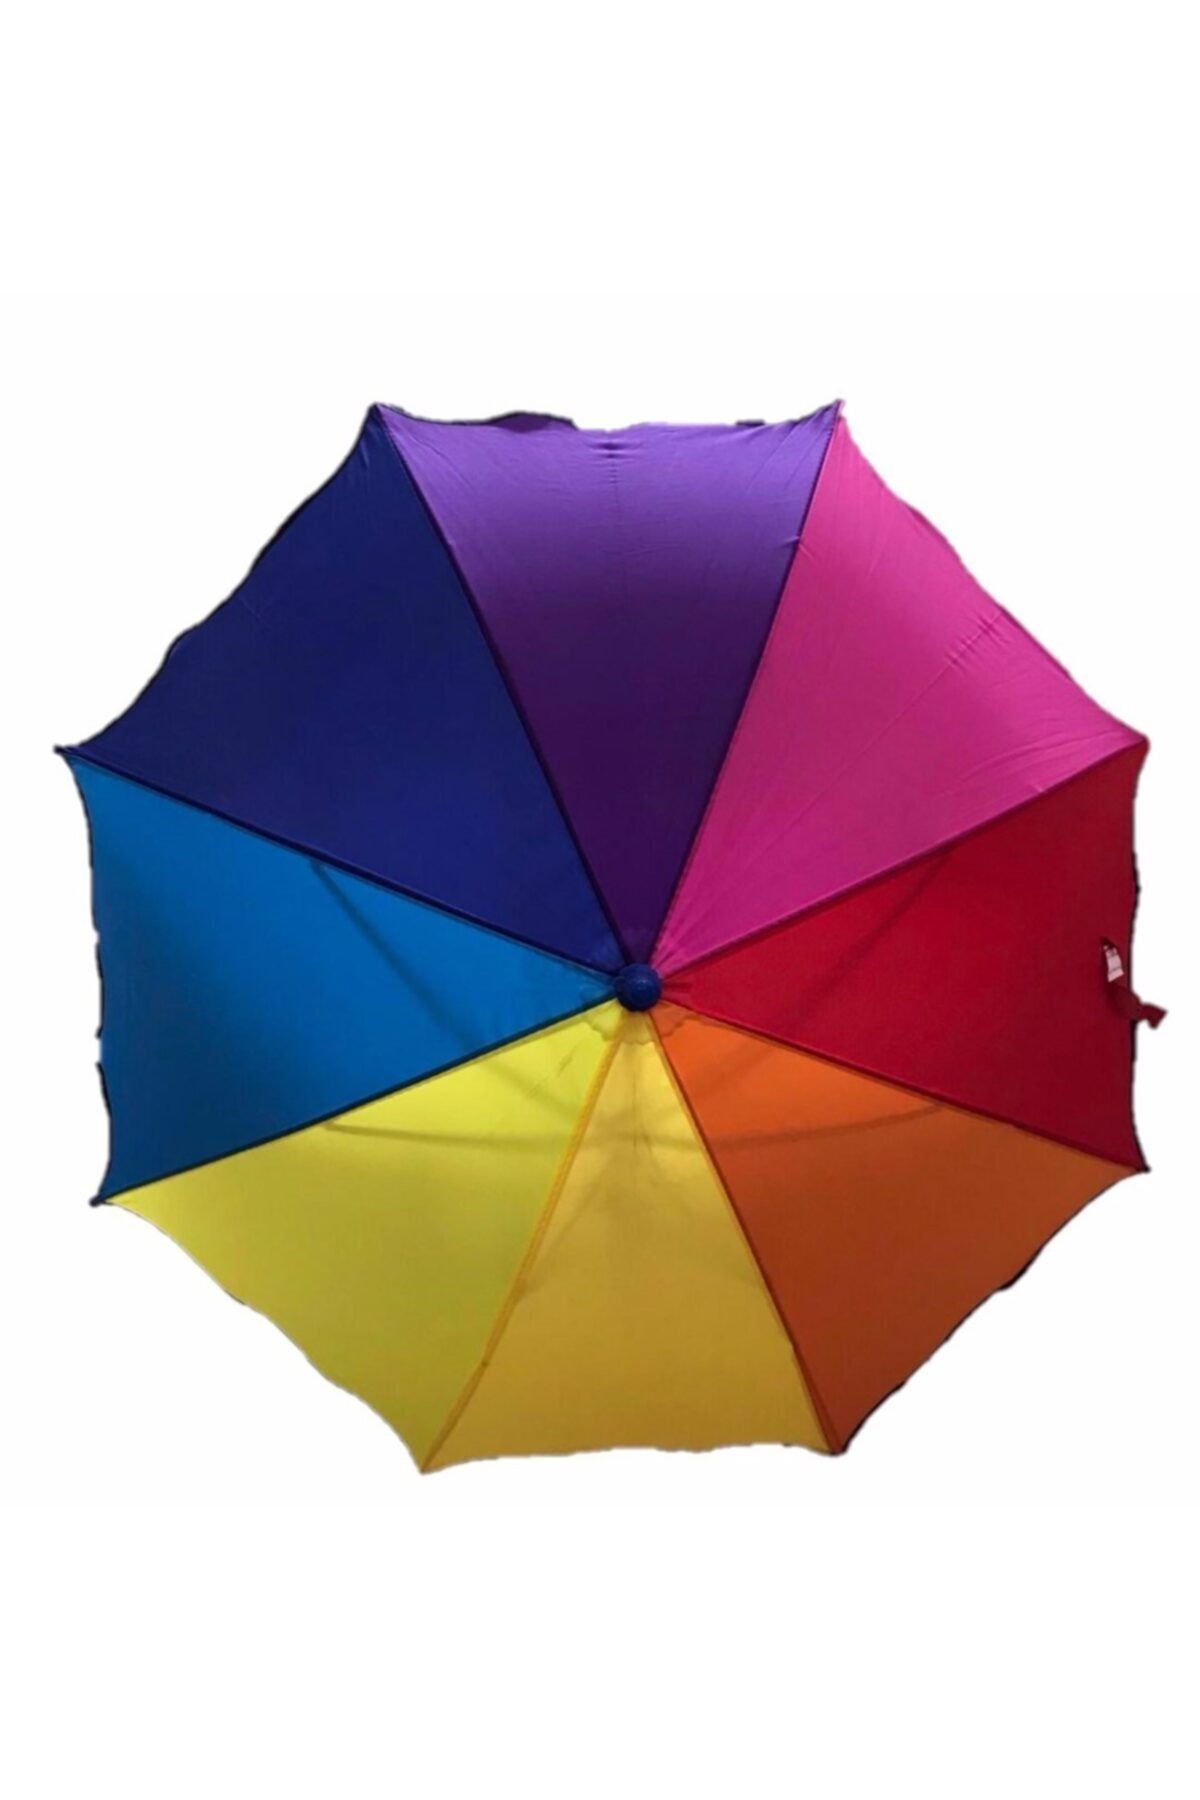 MOBGİFT Gökkuşağı Baston Çocuk Şemsiyesi (rengarenk)